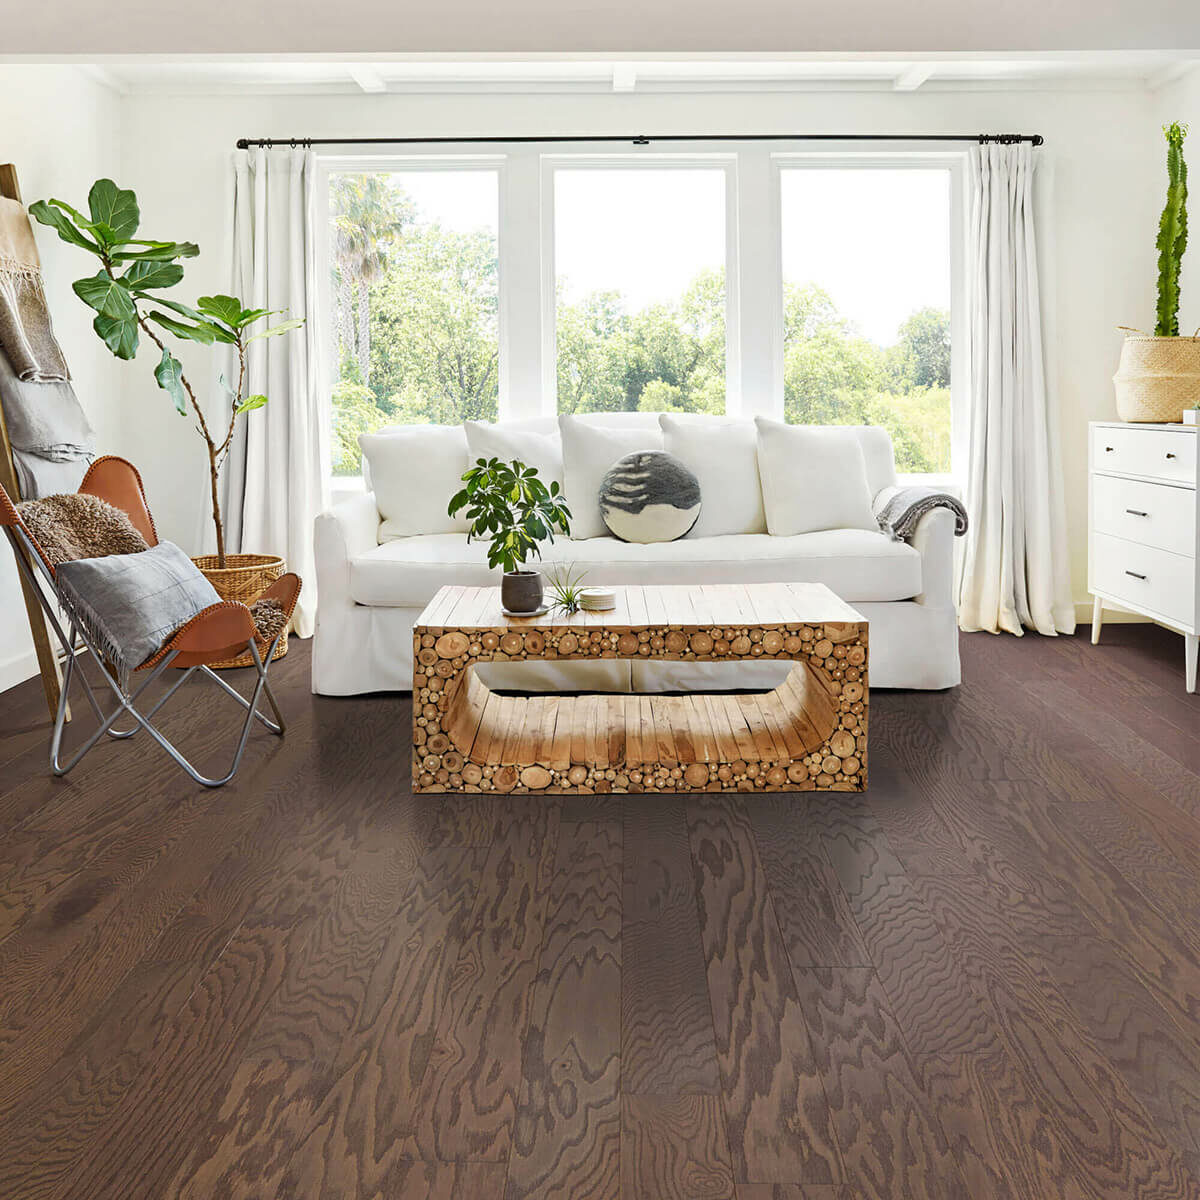 Hardwood flooring |  Gainesville CarpetsPlus COLORTILE